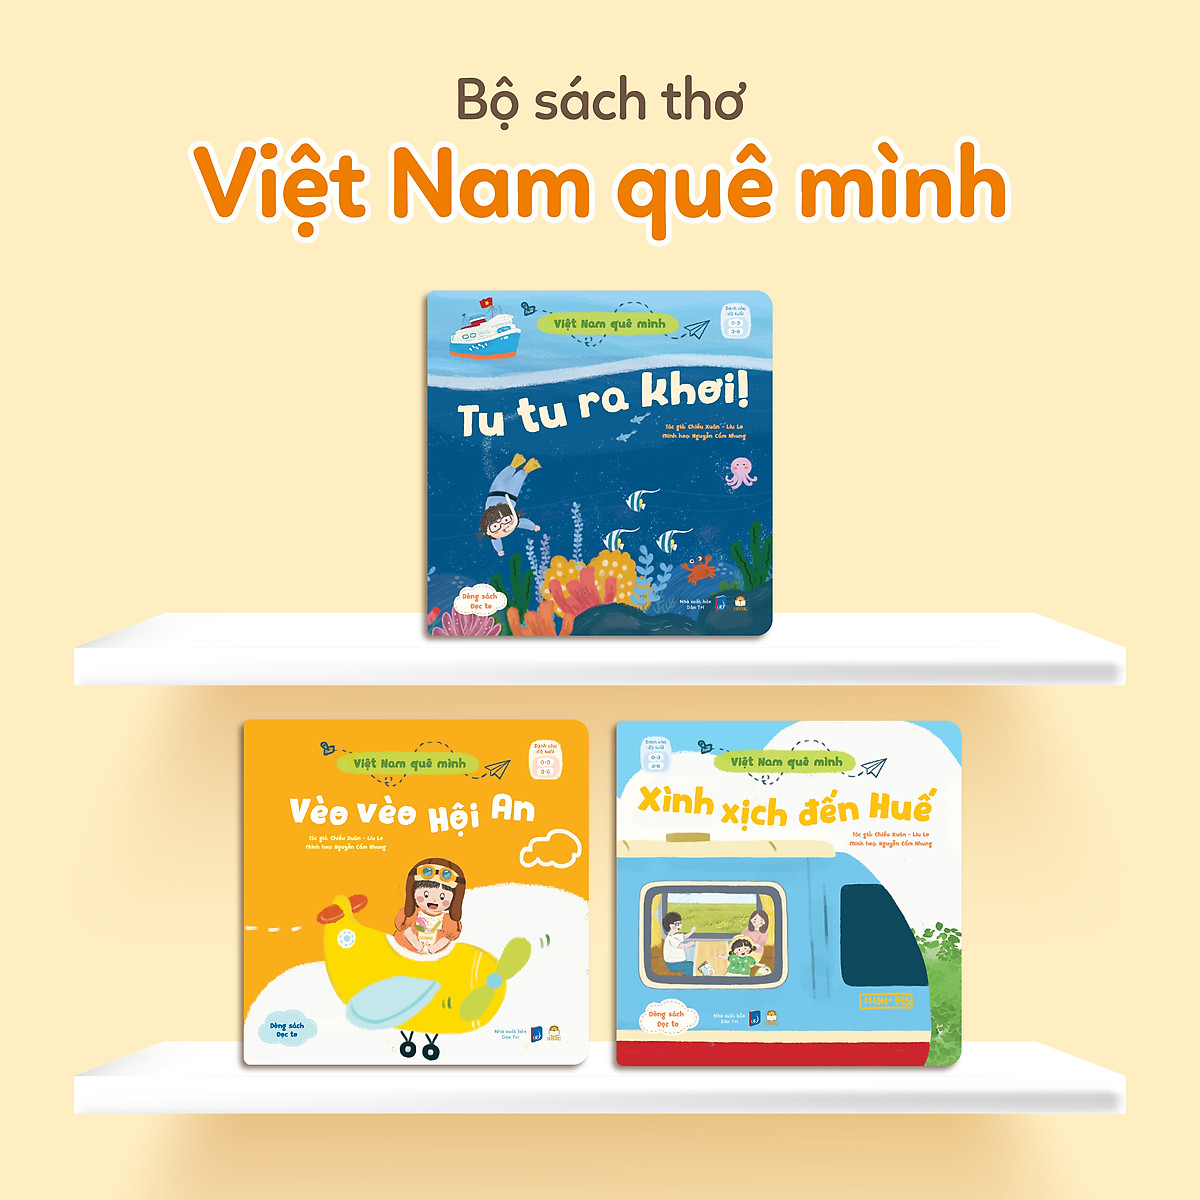 Việt Nam quê mình